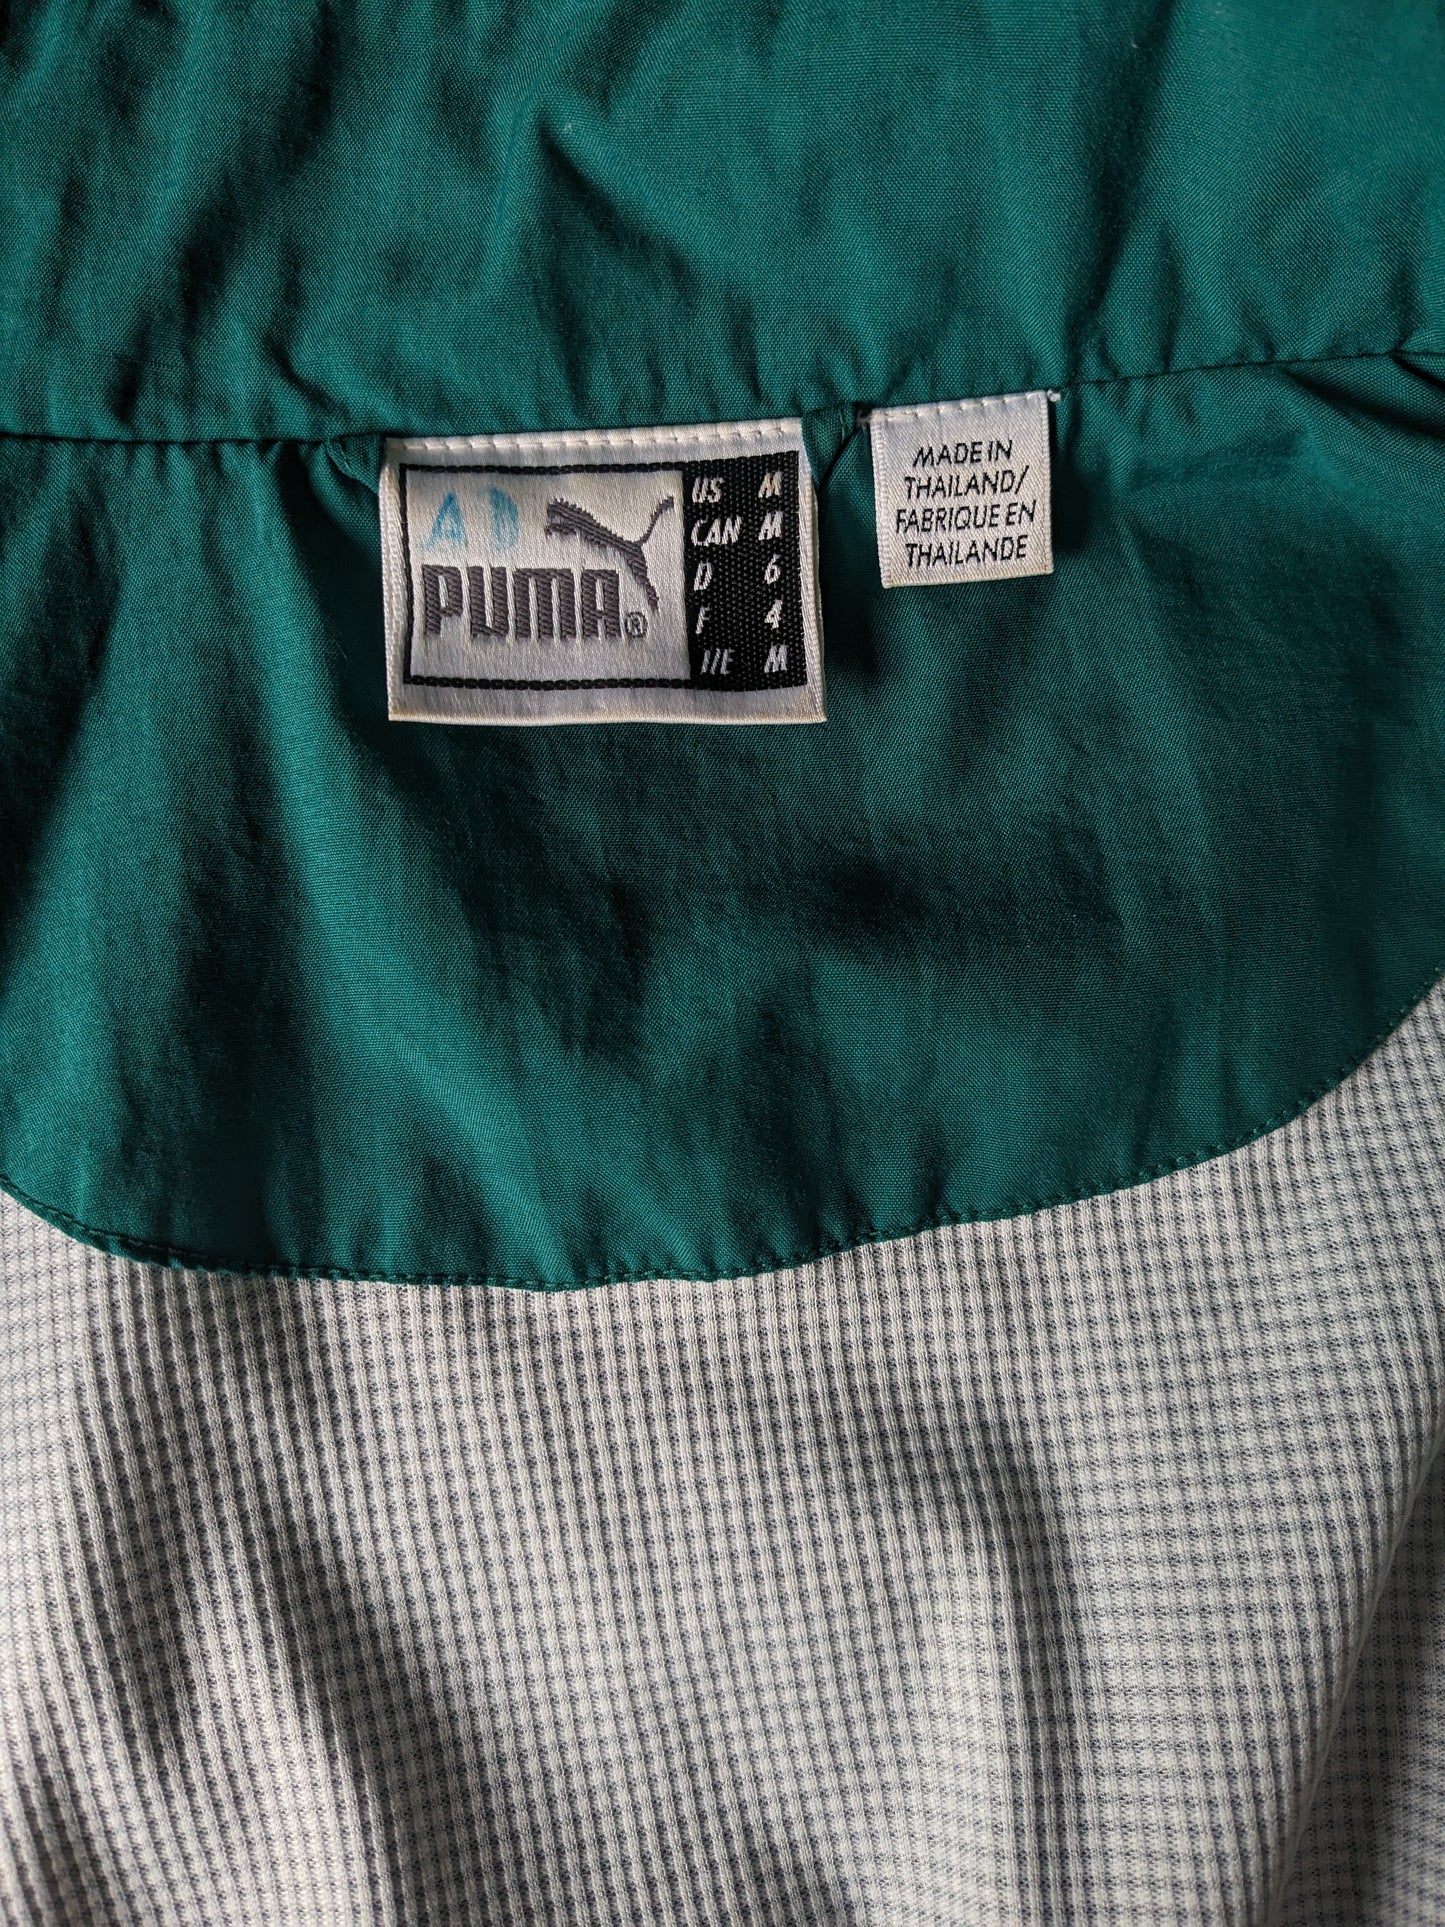 Puma Sport Jack de Vintage 80S-90. Azul oscuro verde blanco de color. Tamaño xl.